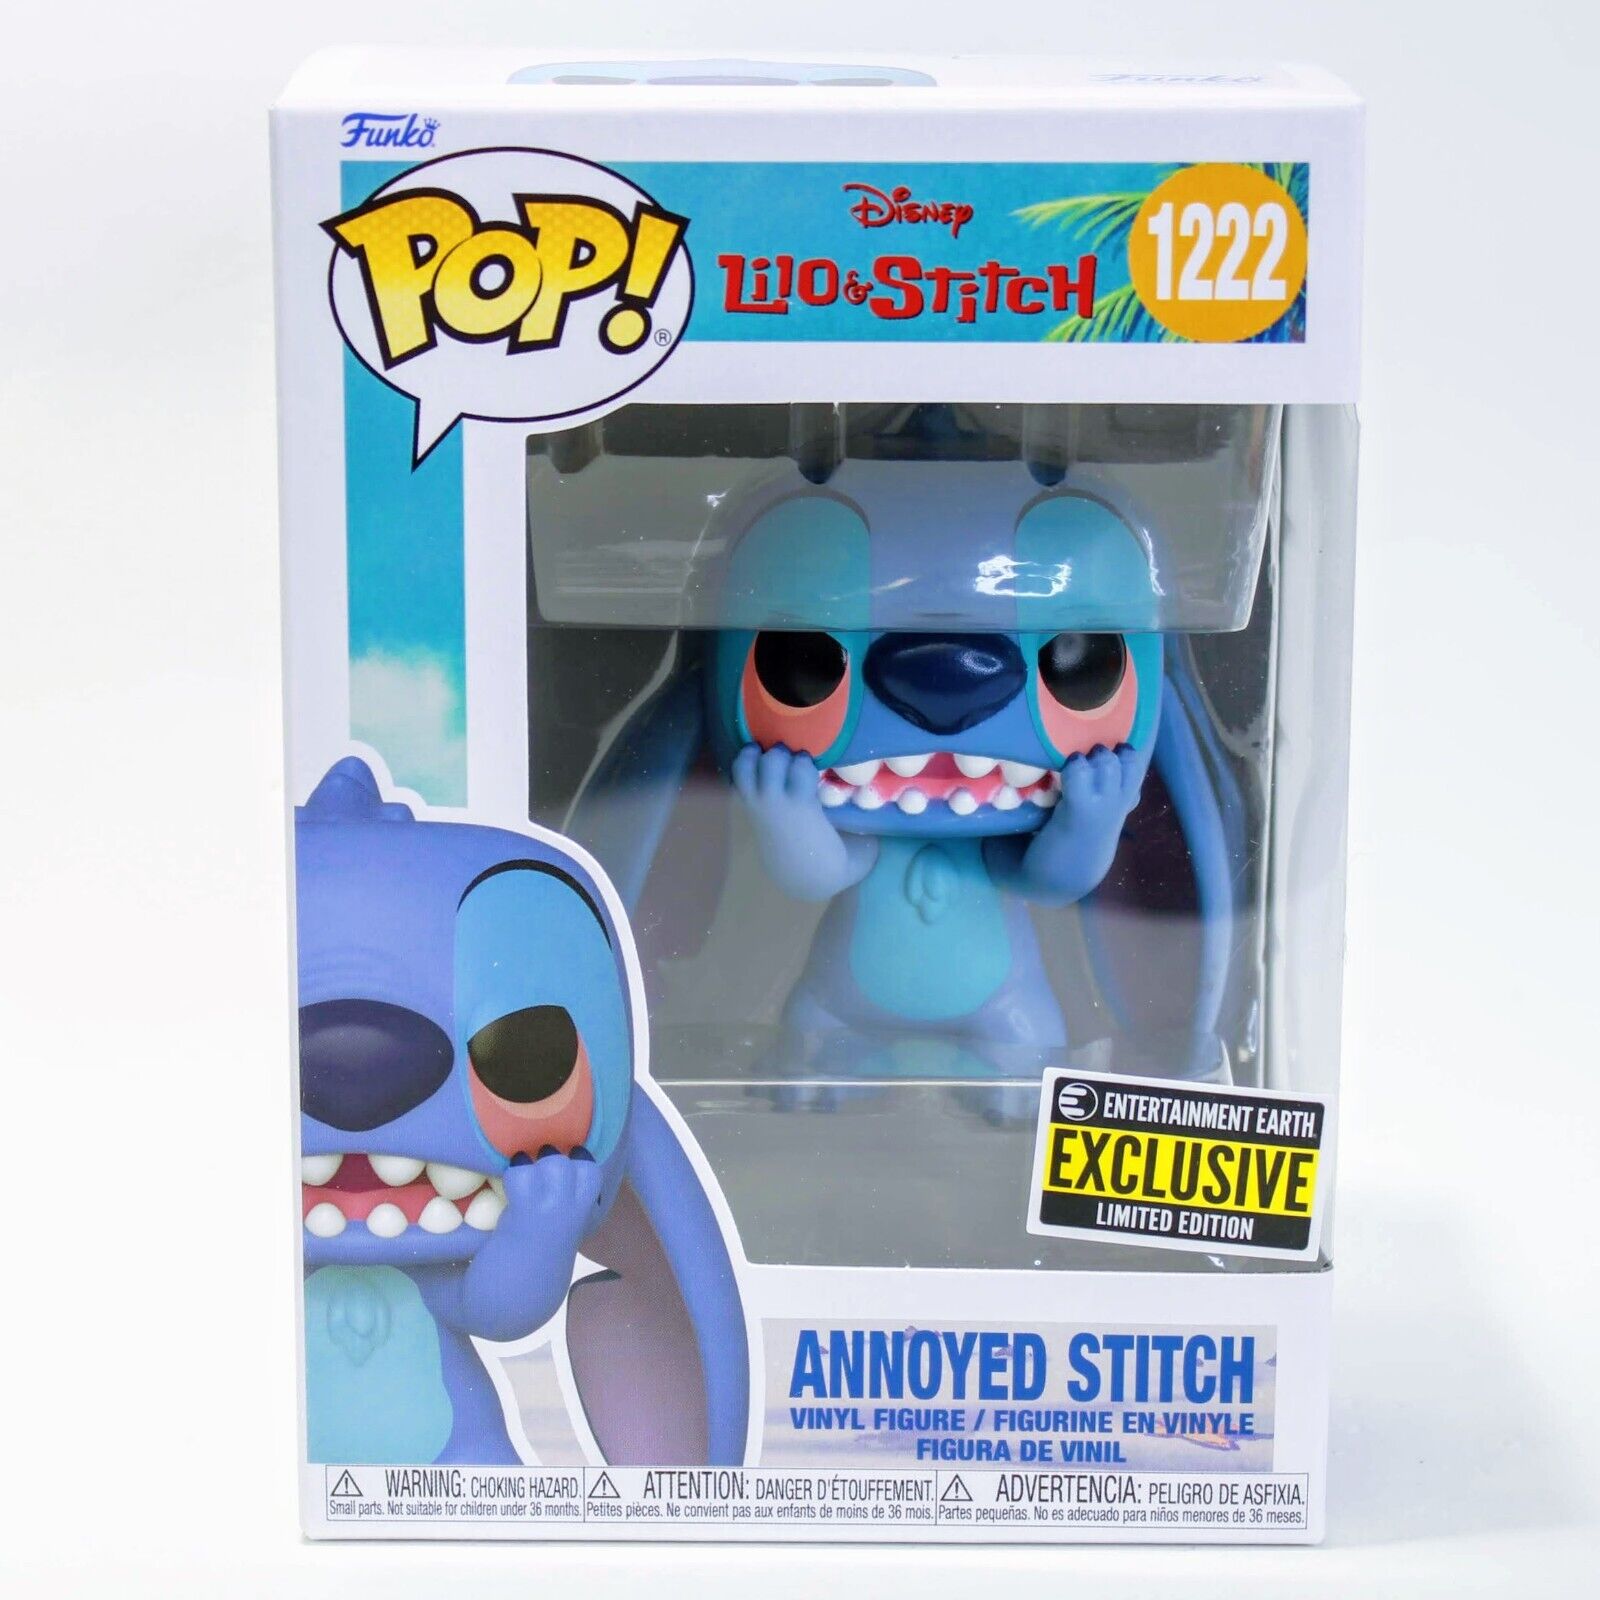 Disney Lilo & Stitch Annoyed Stitch Pop! Vinyl Figure # 1222 EE Exclusive